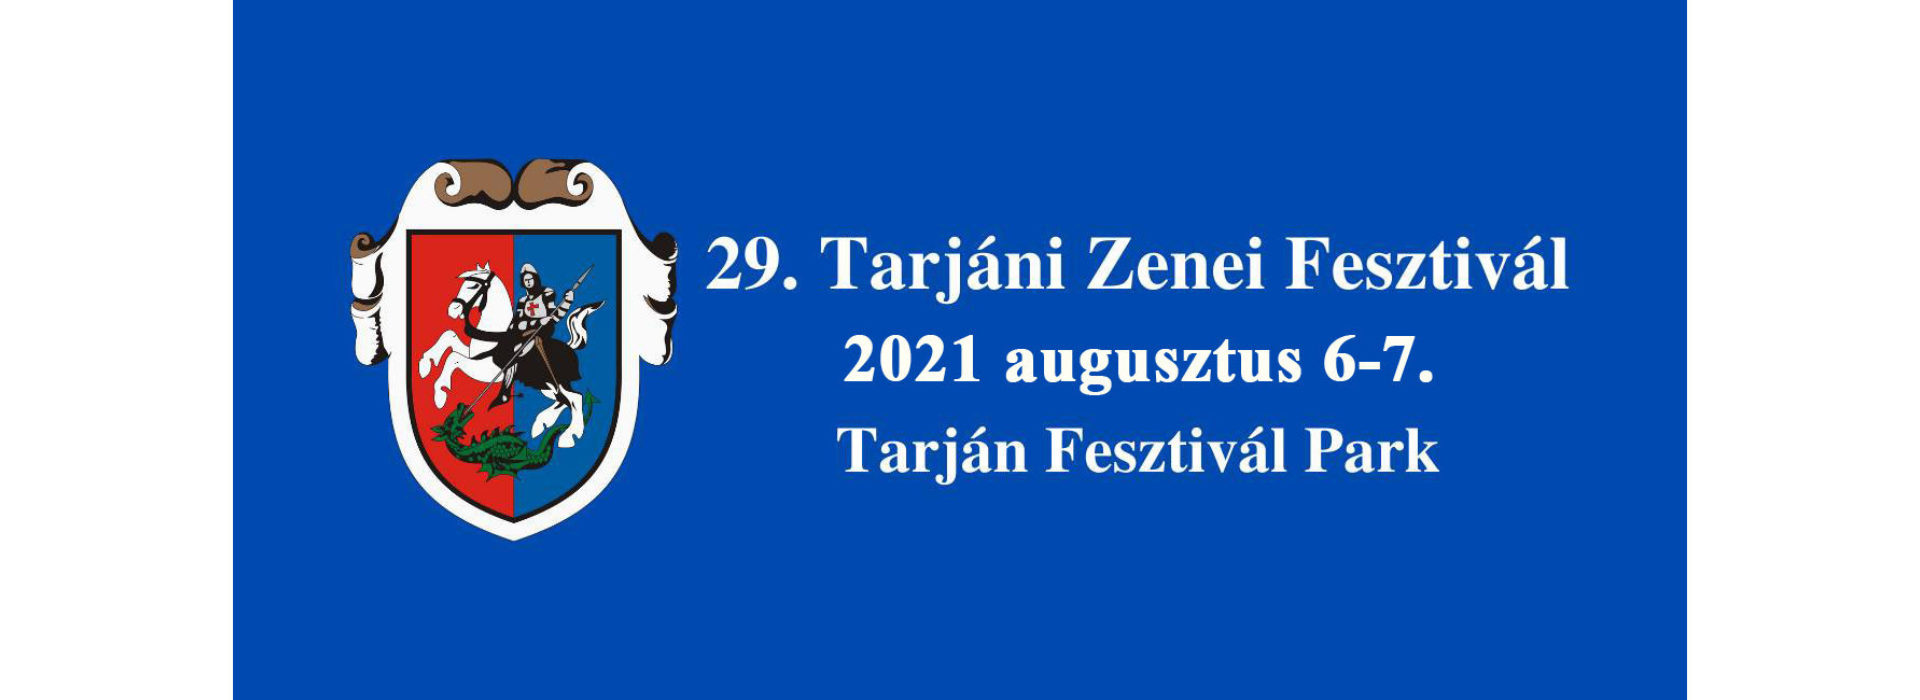 29. Tarjáin Zenei Fesztivál